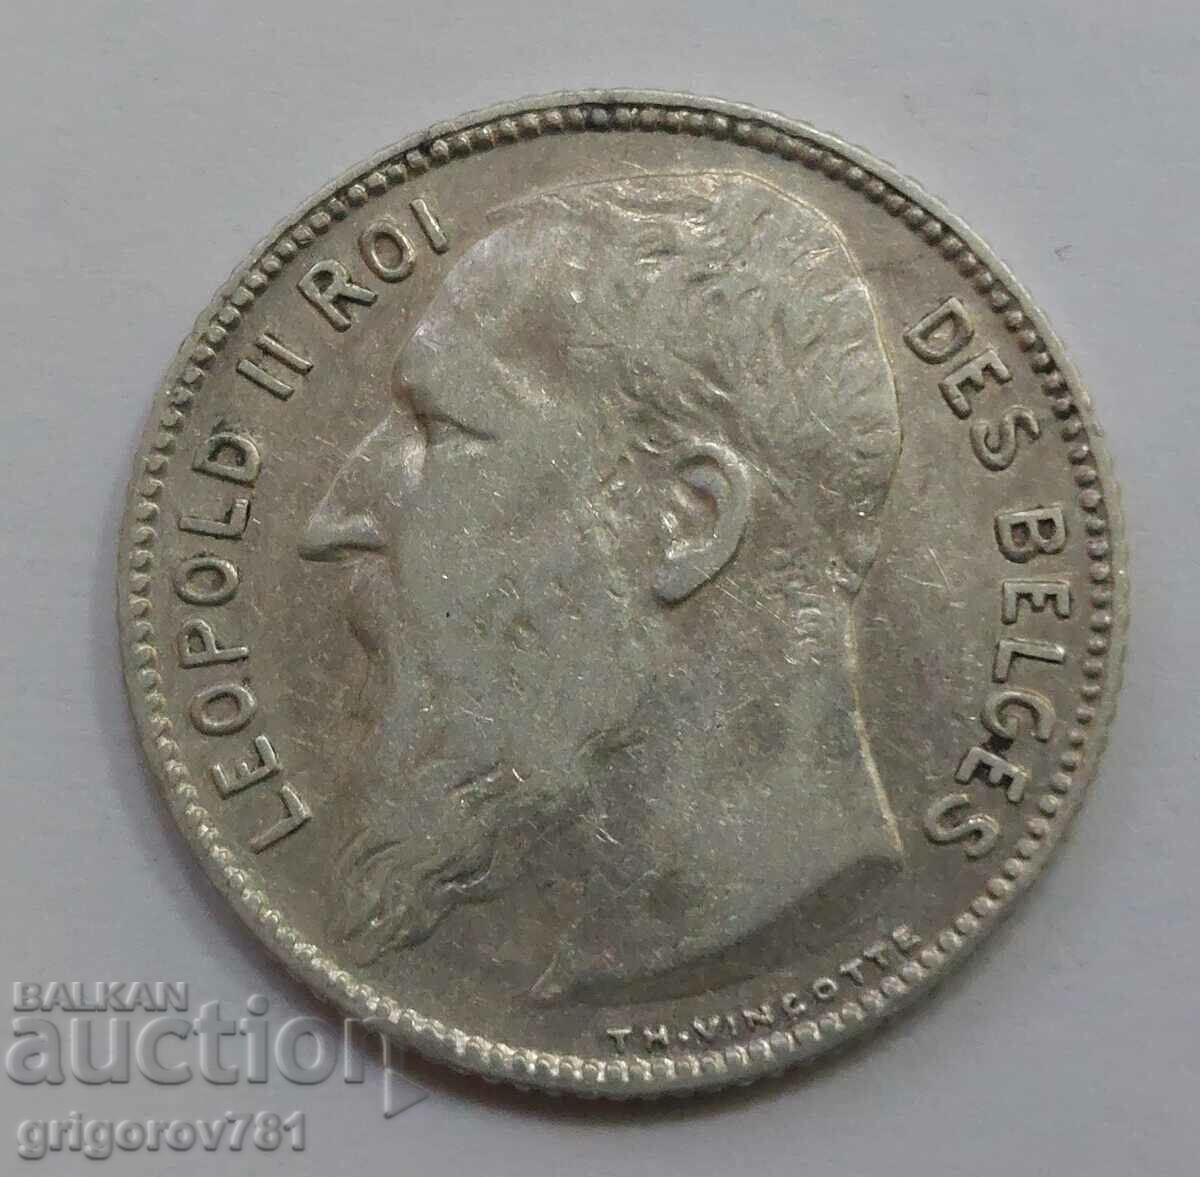 1 franc silver Belgium 1909 - silver coin #69